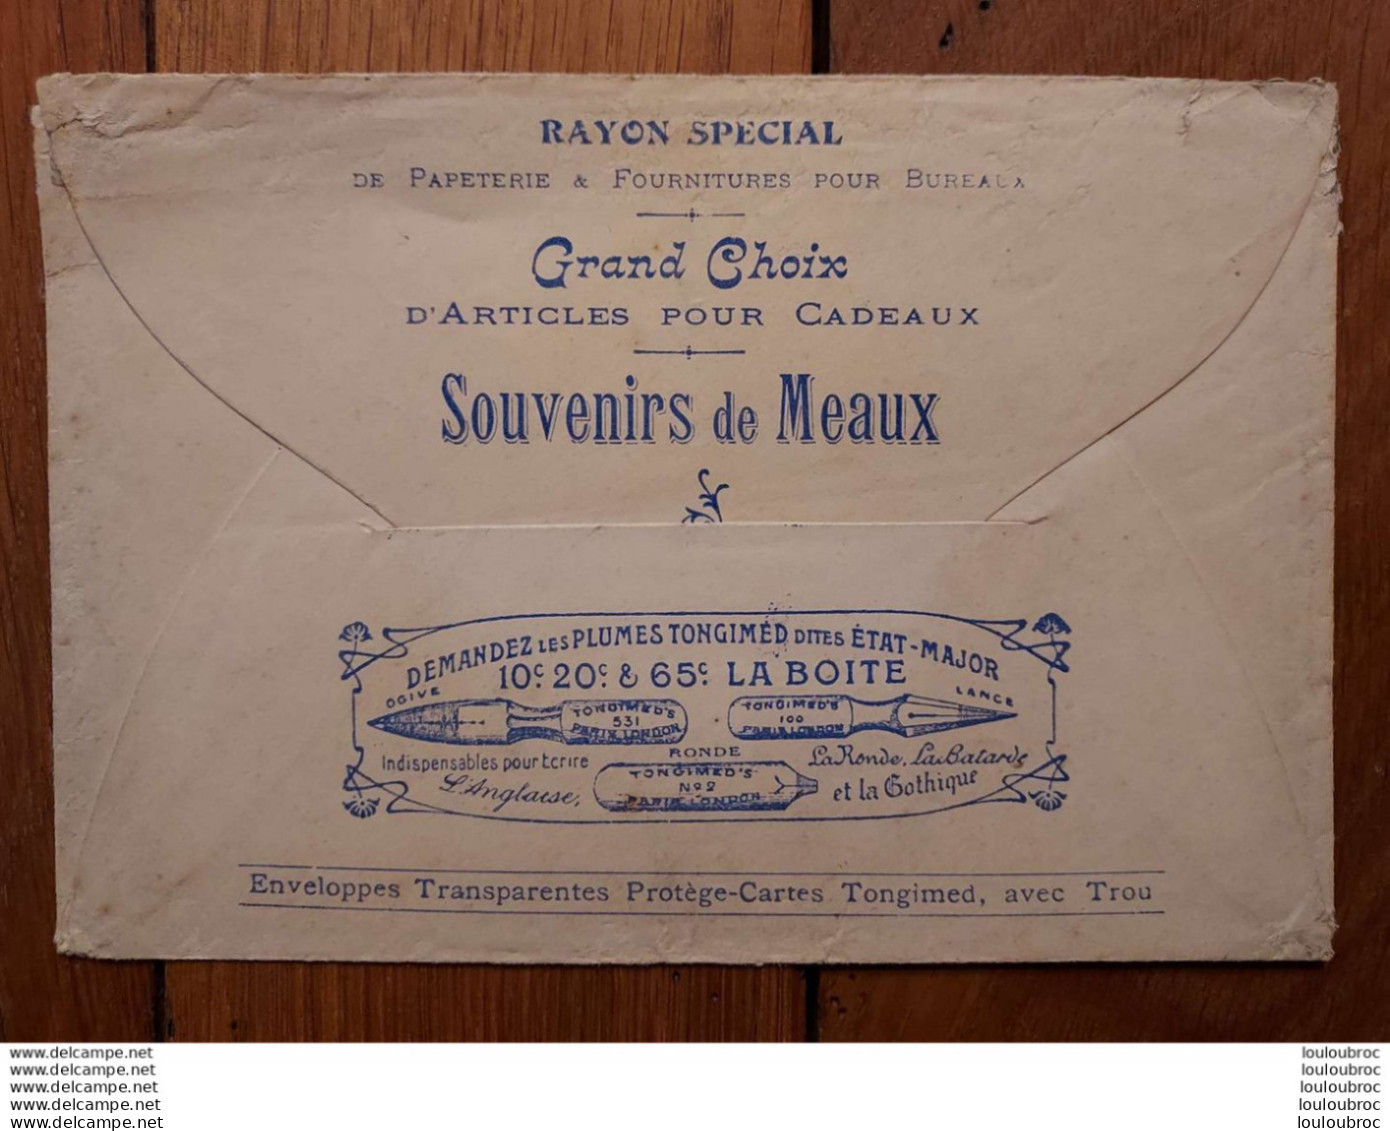 ENVELOPPE VIDE SOUVENIR DE MEAUX NOUVELLES CARTES POSTALES  GRANDS MAGASINS 49 RUE SAINT NICOLAS MEAUX - 1900 – 1949